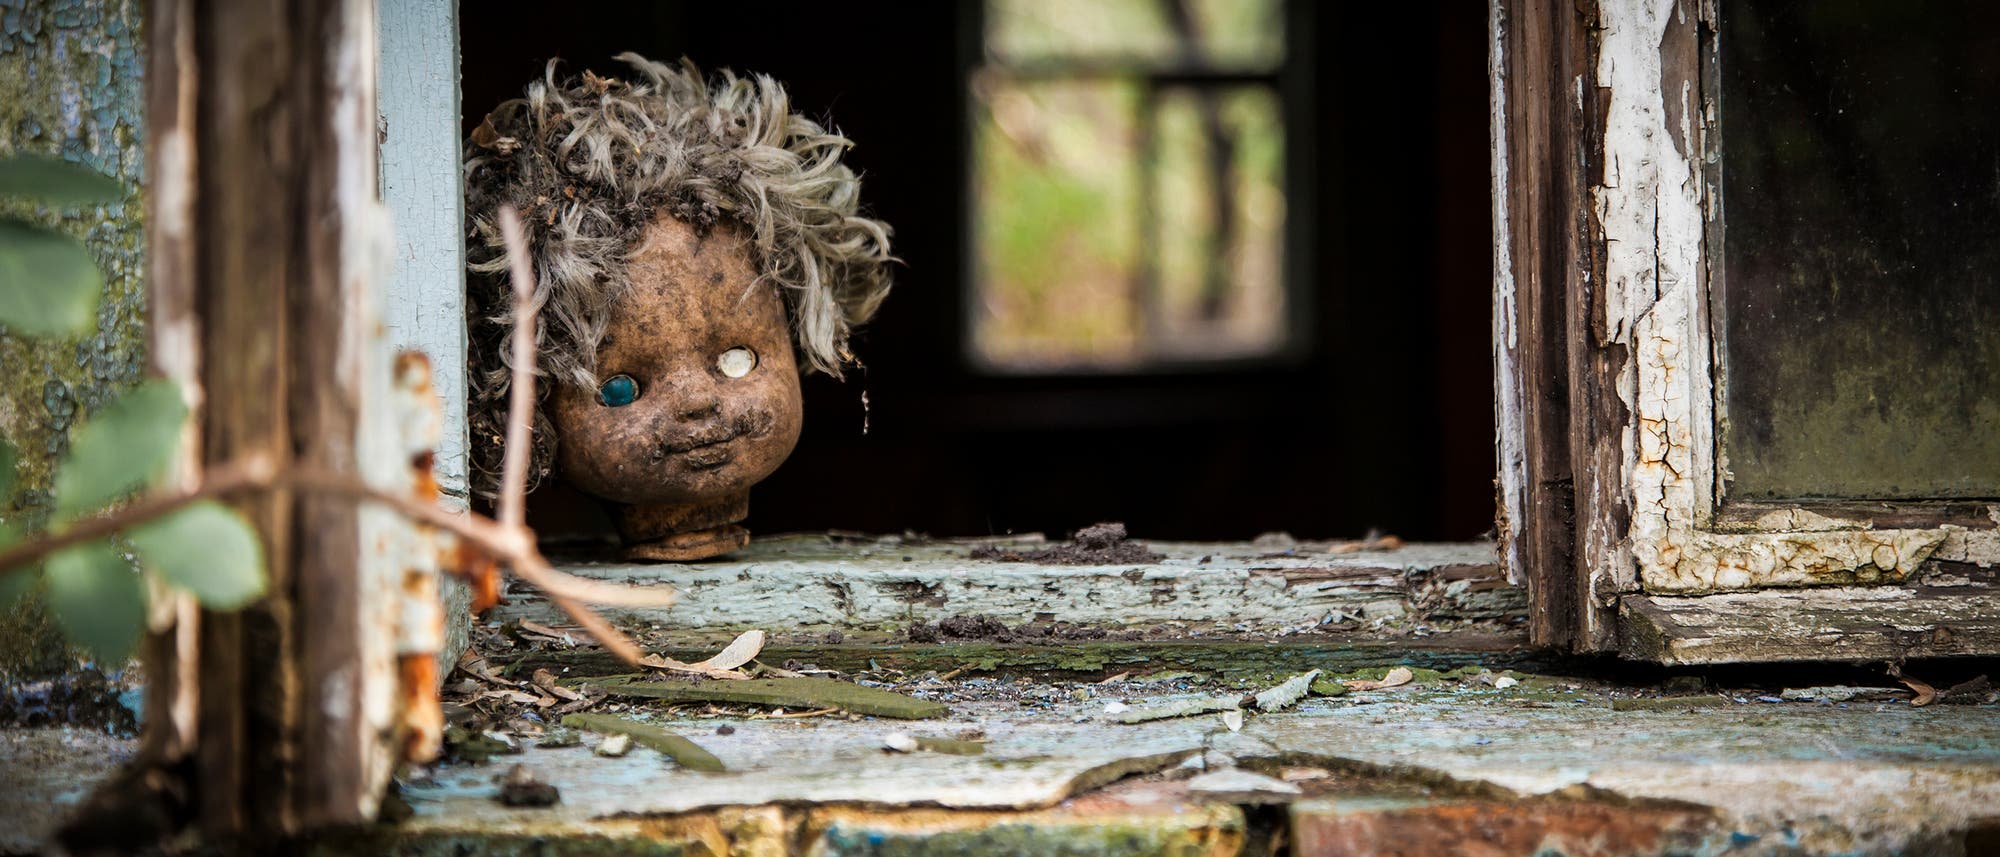 Tschernobyl: Puppe im Fenster